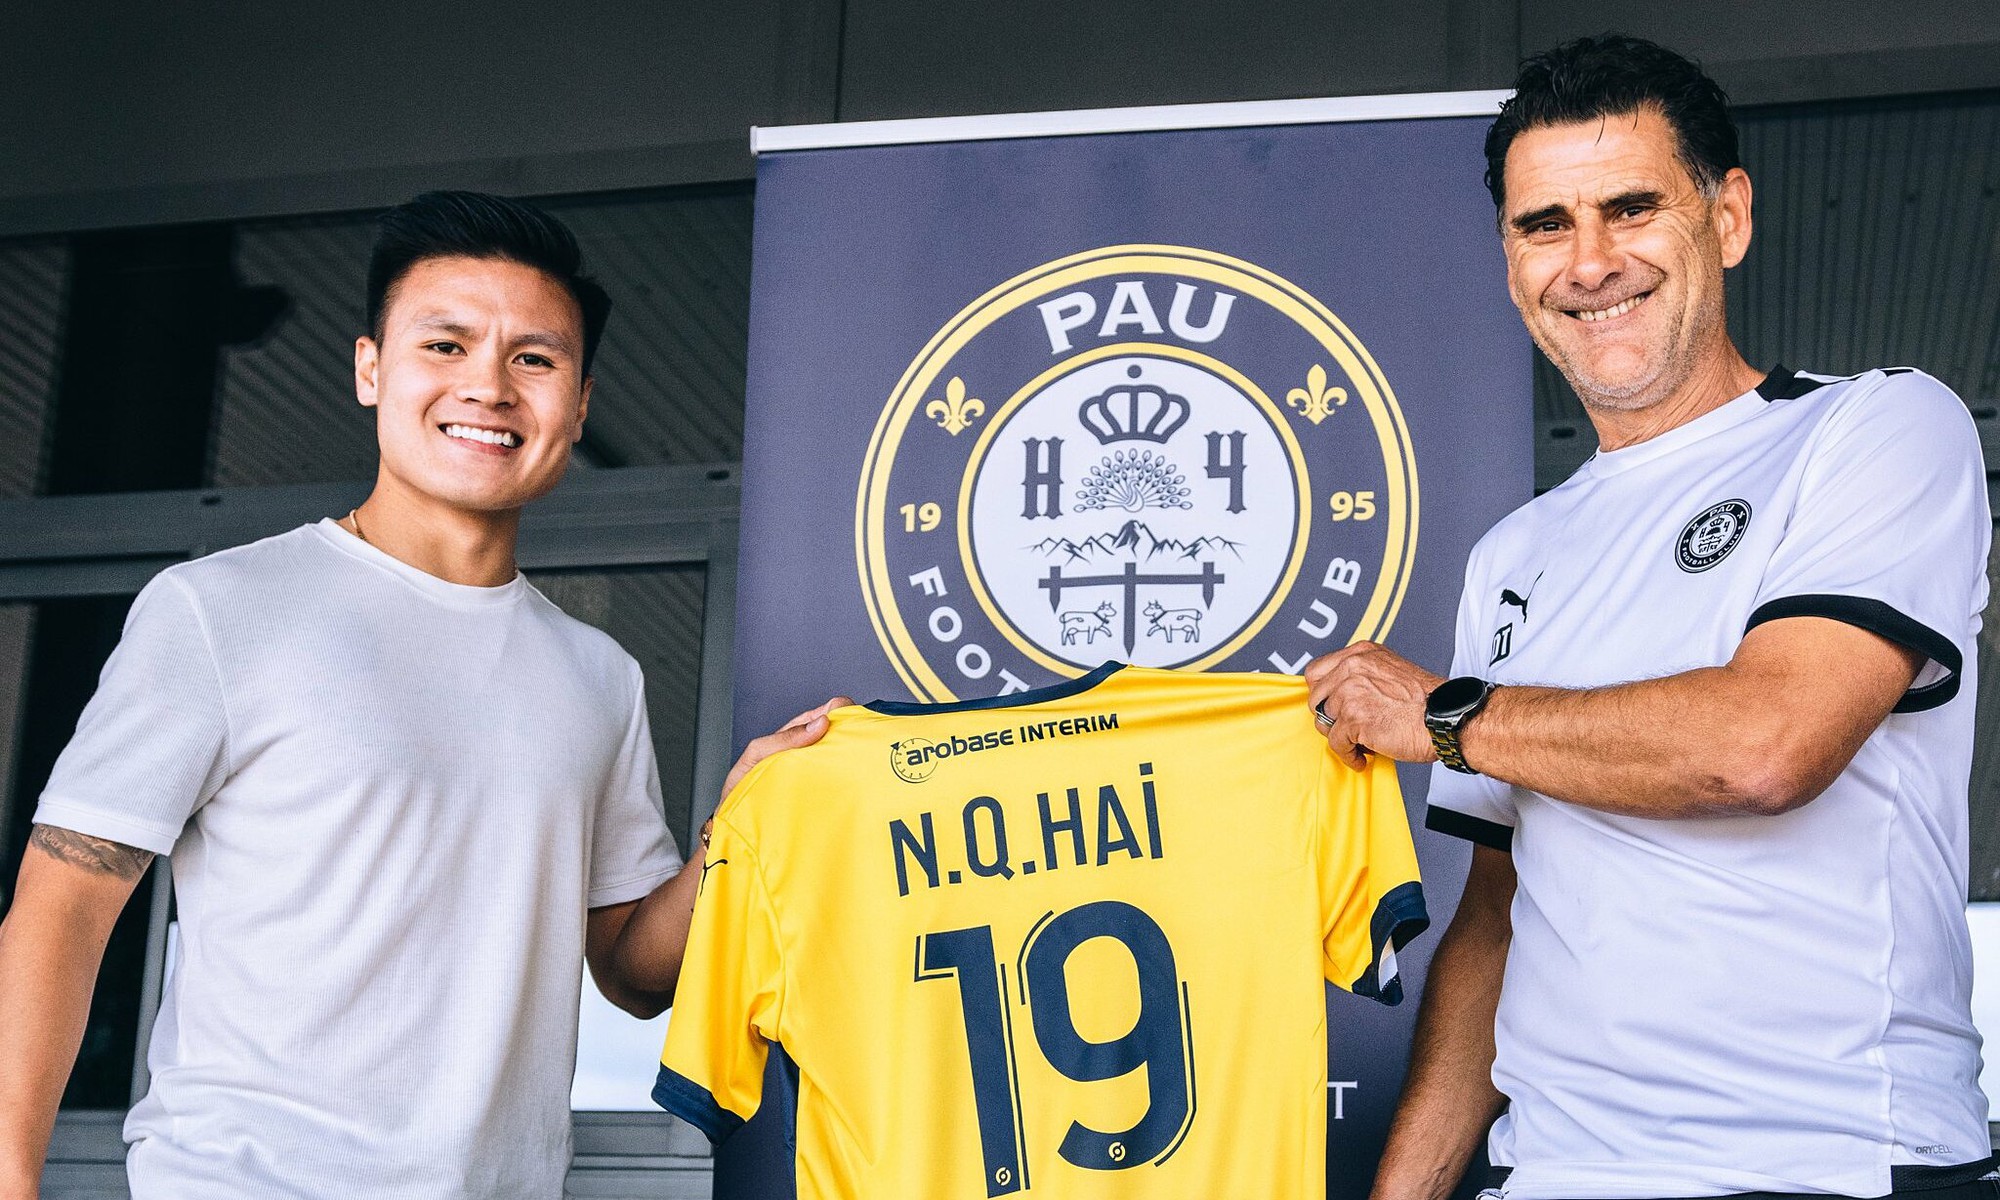 Tin sáng (10/6): HLV Tholot từ chức, Quang Hải sẽ ở lại Pau FC? - Ảnh 1.